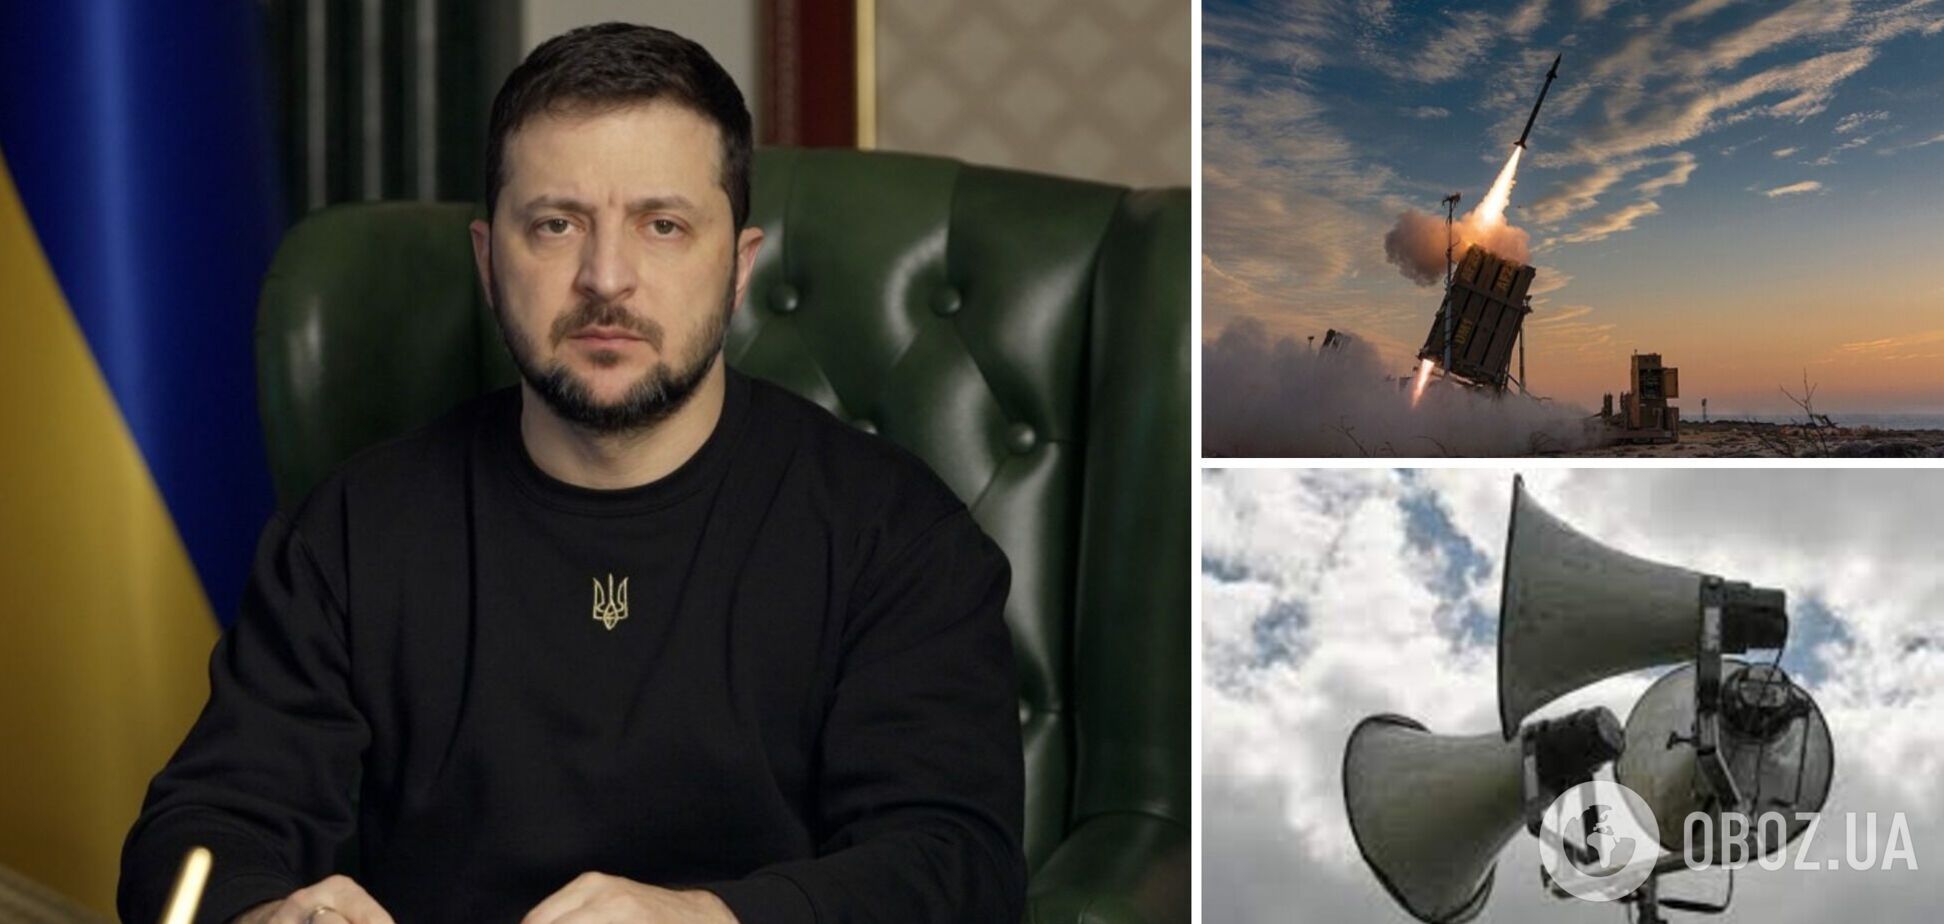 'Несмотря на усиление ПВО, опасность до сих пор значительна': Зеленский призвал украинцев не игнорировать сигналы воздушной тревоги